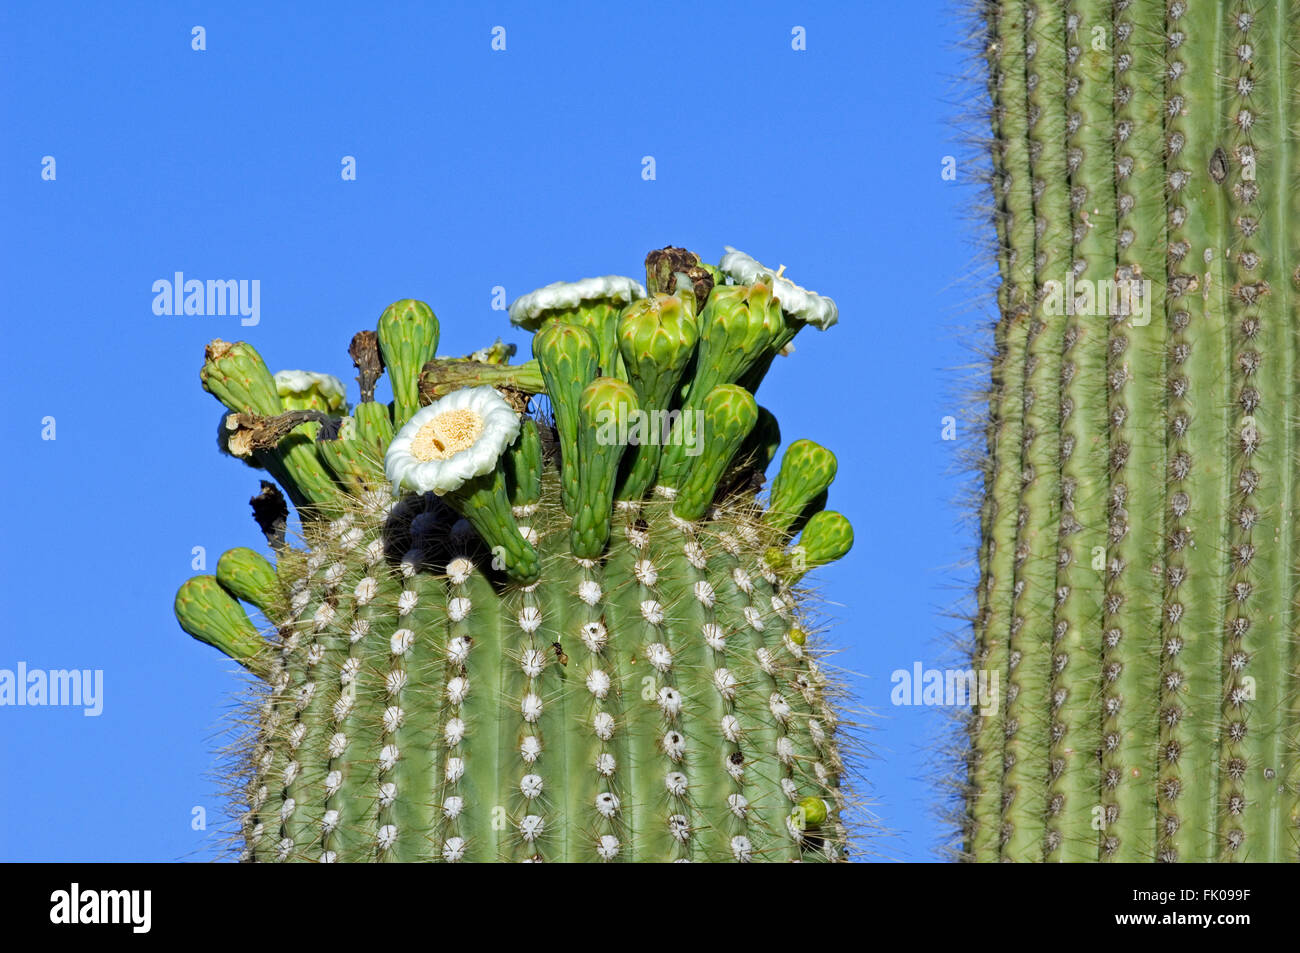 Saguaro cactus (Carnegiea gigantea / Cereus giganteus / Pilocereus giganteus) blooming, showing buds and white flowers, Sonora Stock Photo